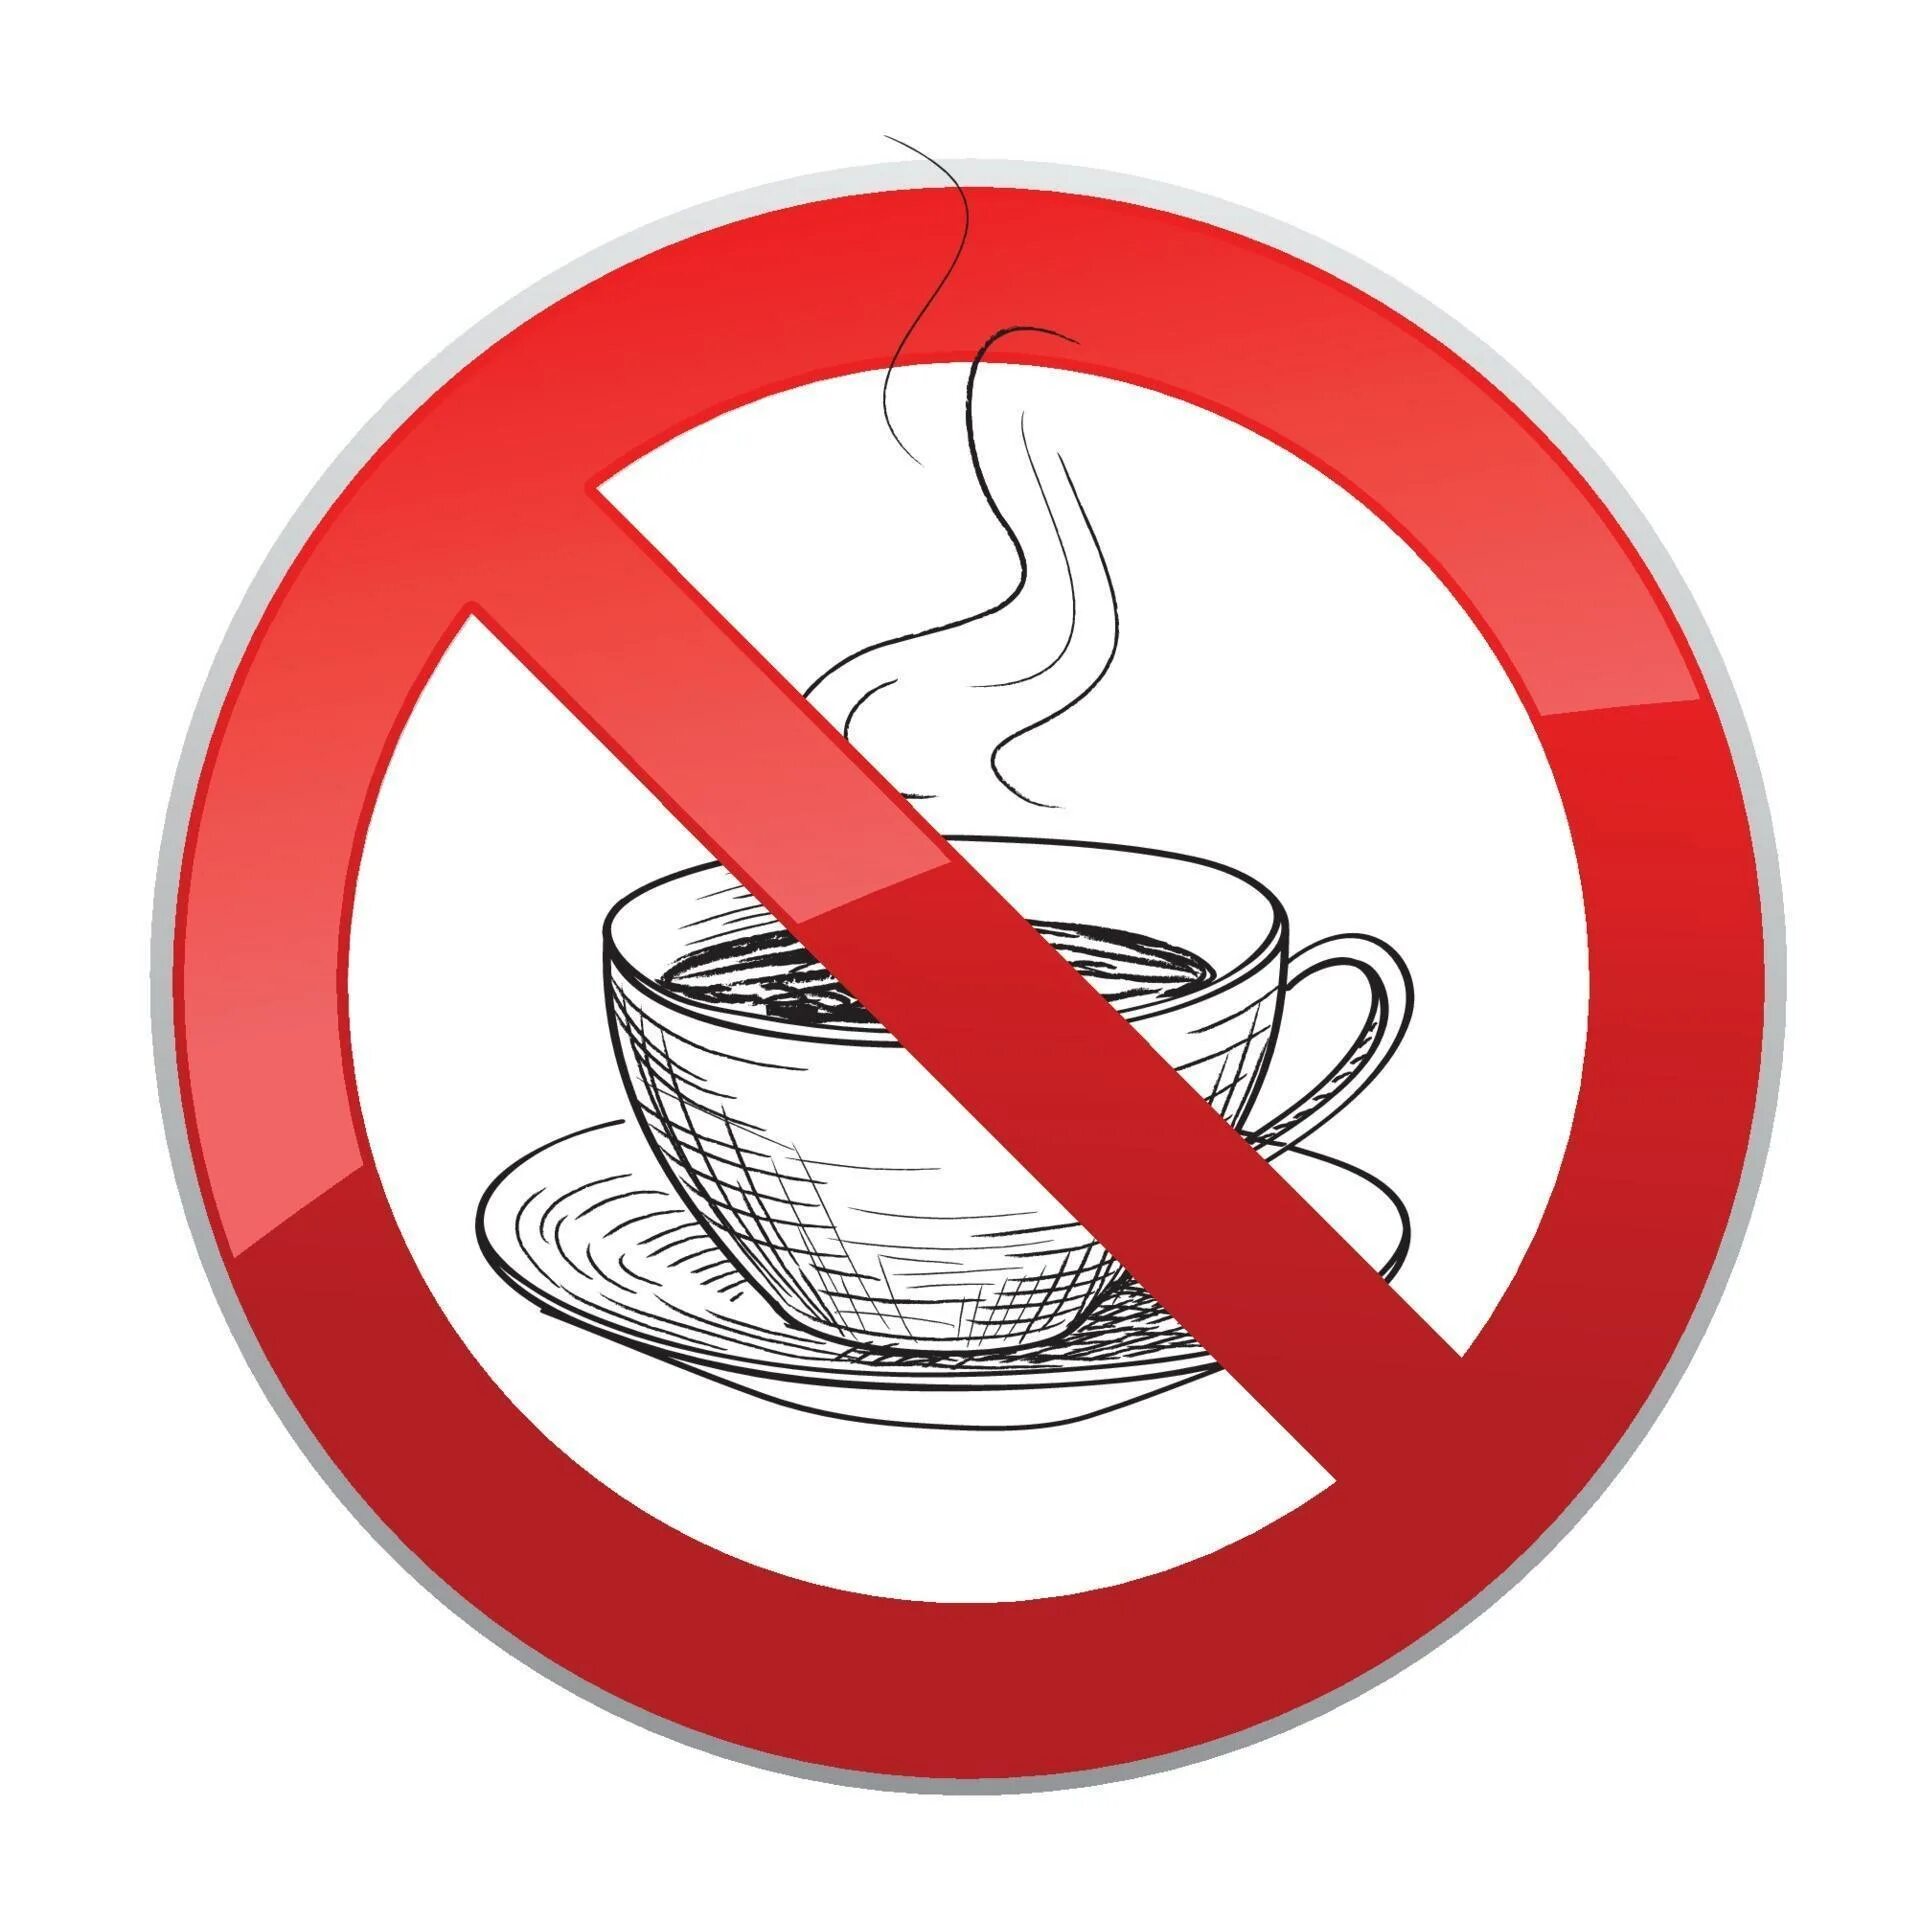 Вредно пить горячее. Кофе перечеркнуто. Чай запрещен. Перечеркнутый чай. Кофе запрещено.